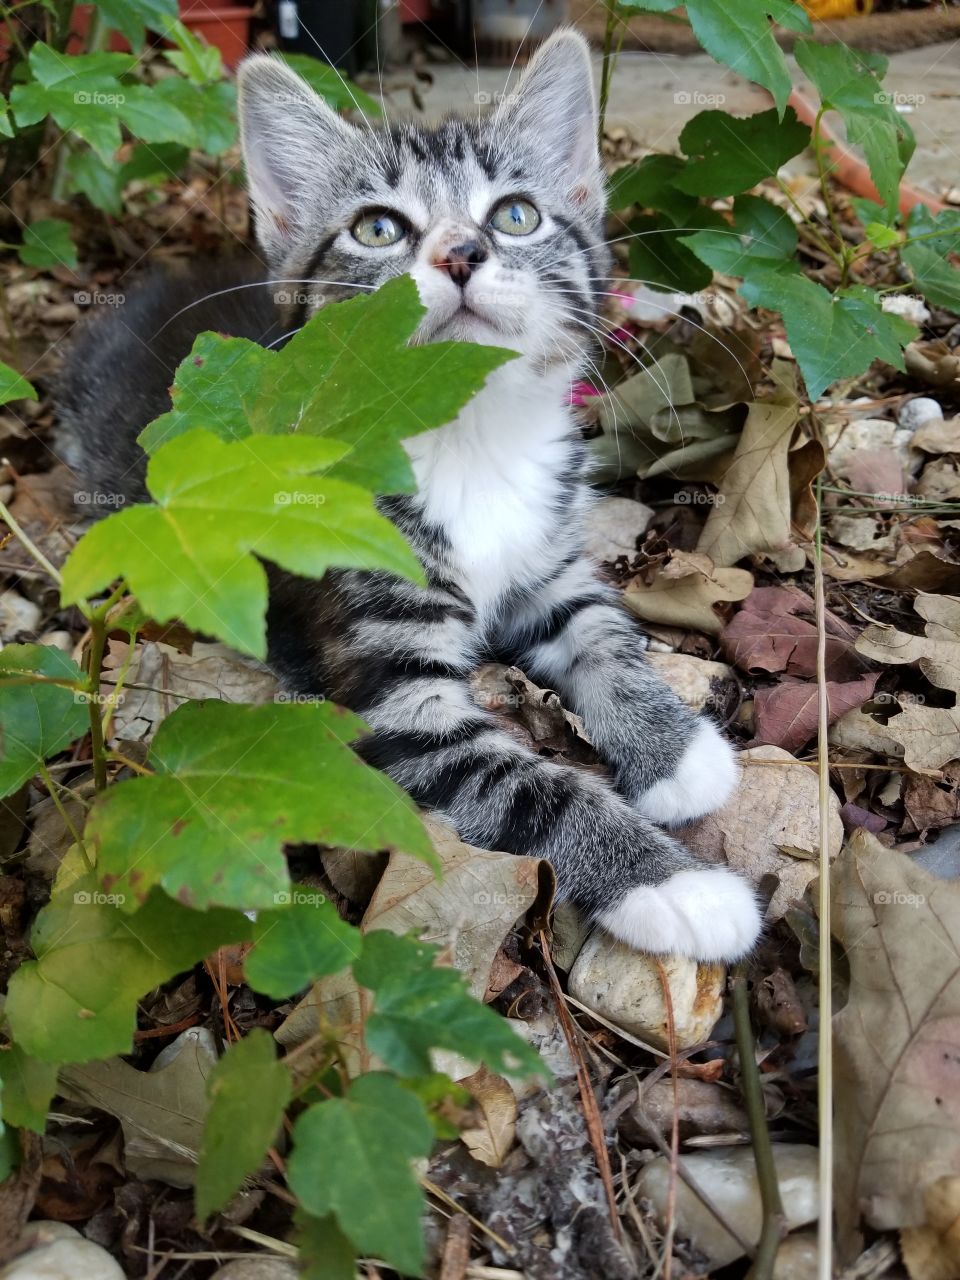 kitten exploring the world outdoors